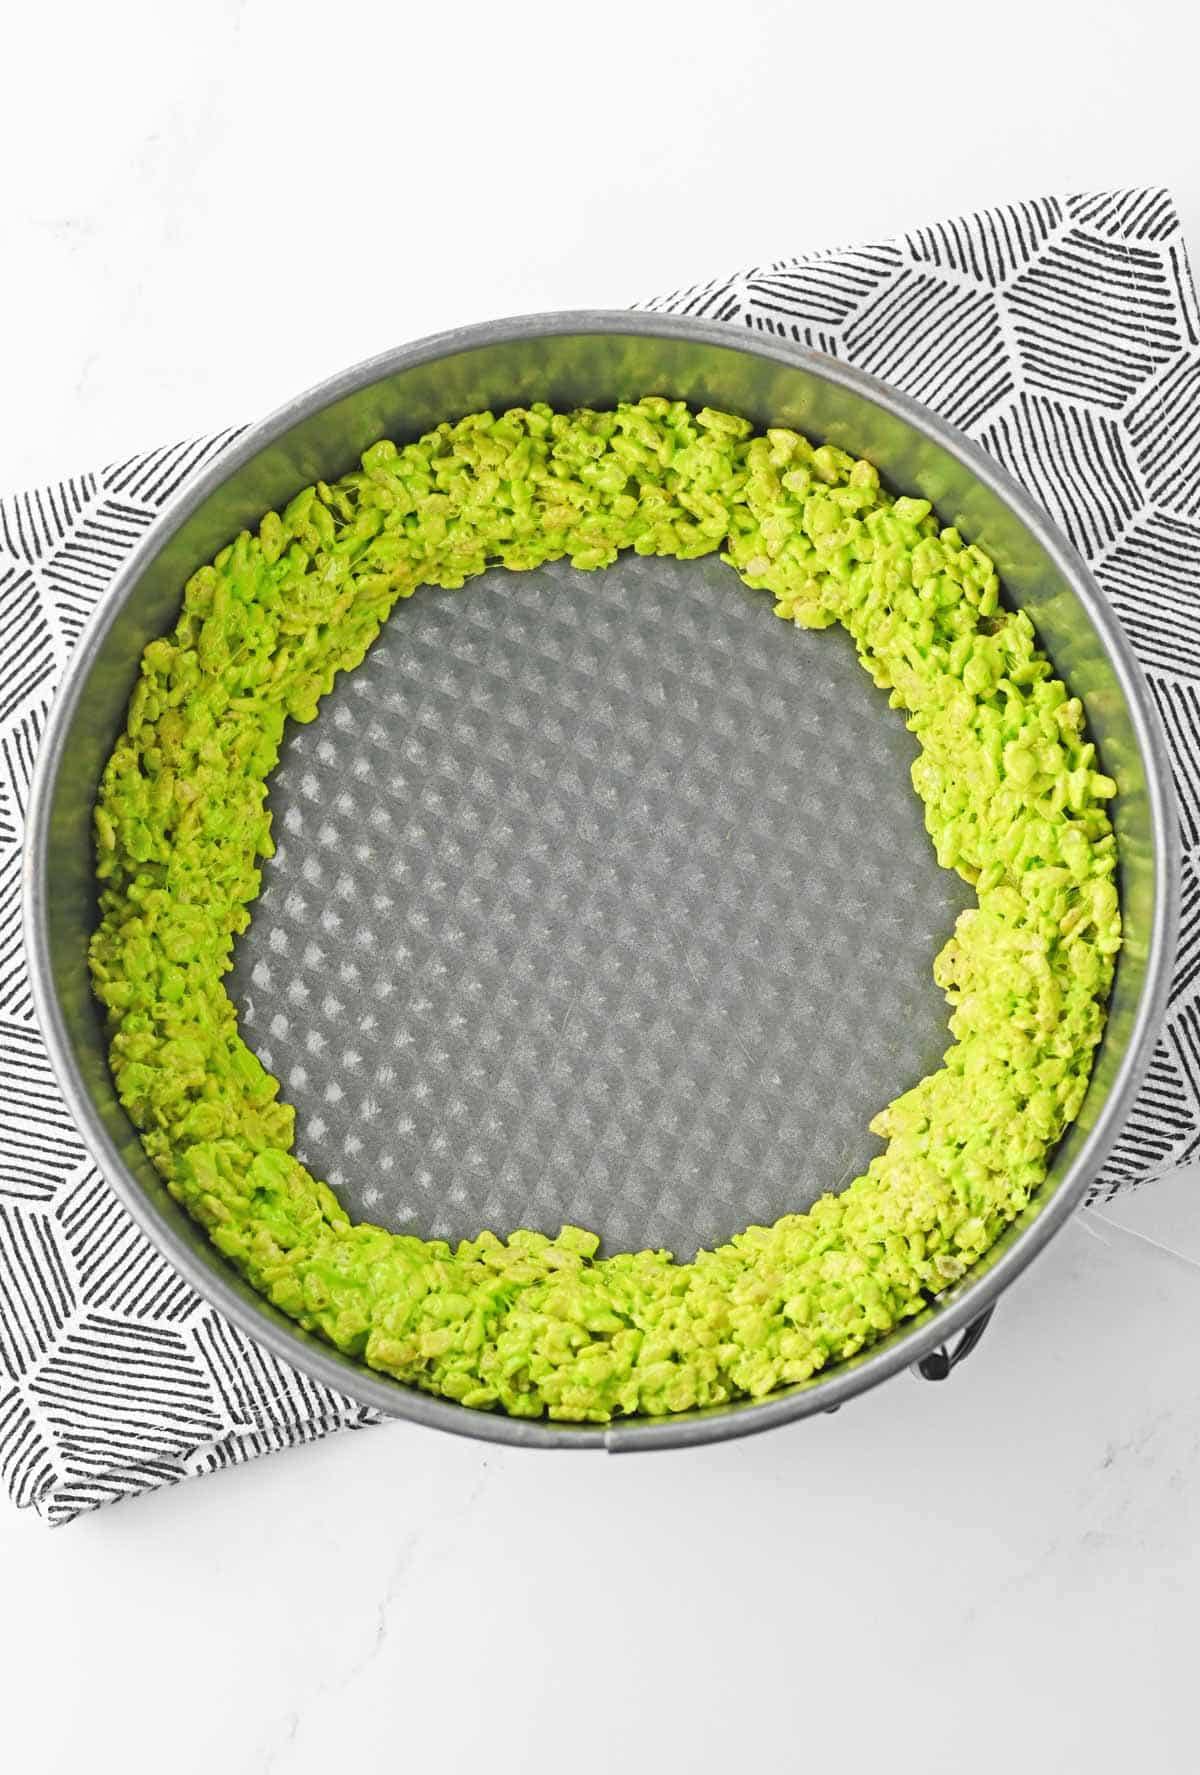 green rice krispies ring in round cake pan